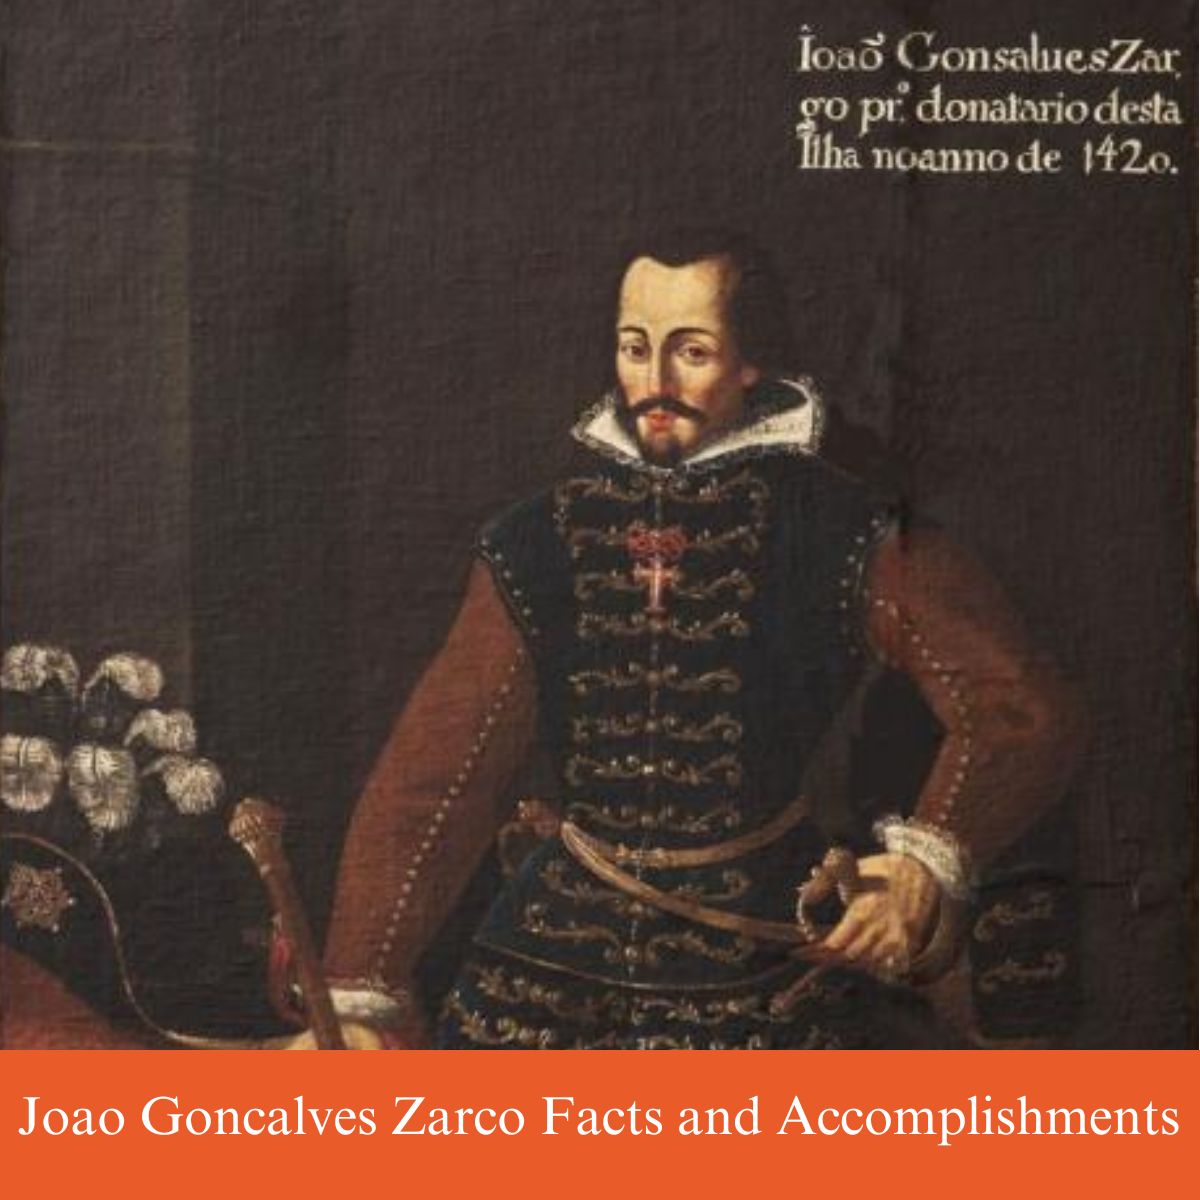 joao goncalves zarco facts